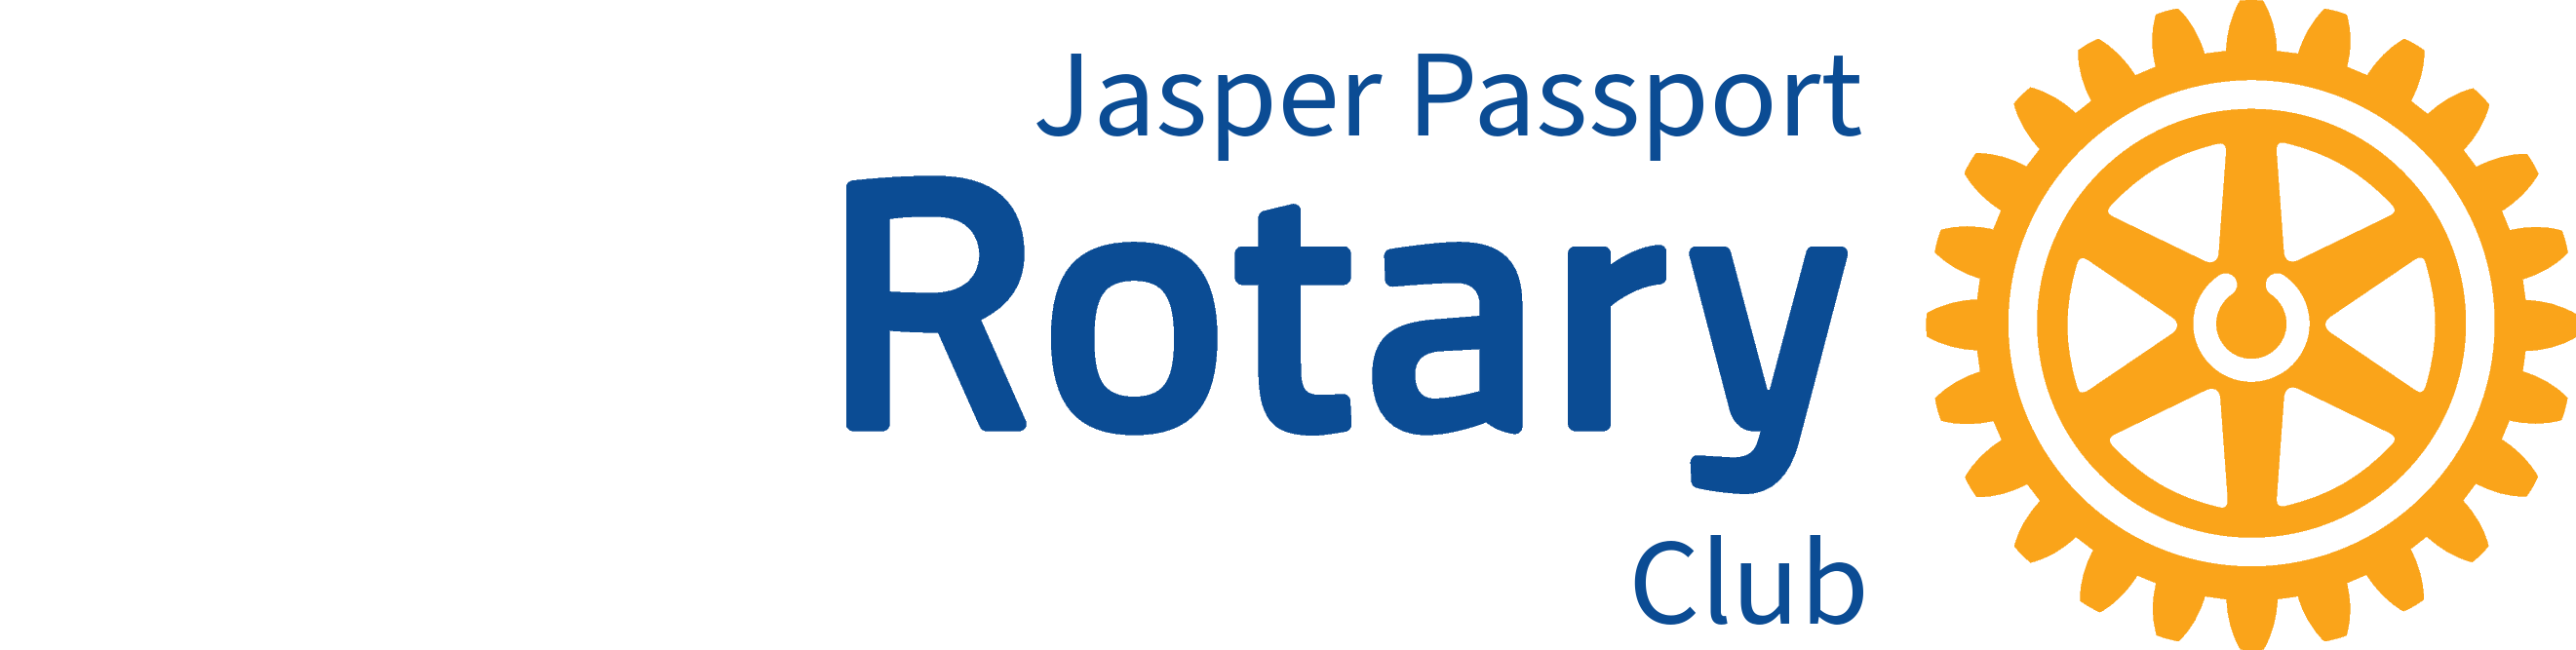 Jasper-Passport-Rotary-Logo